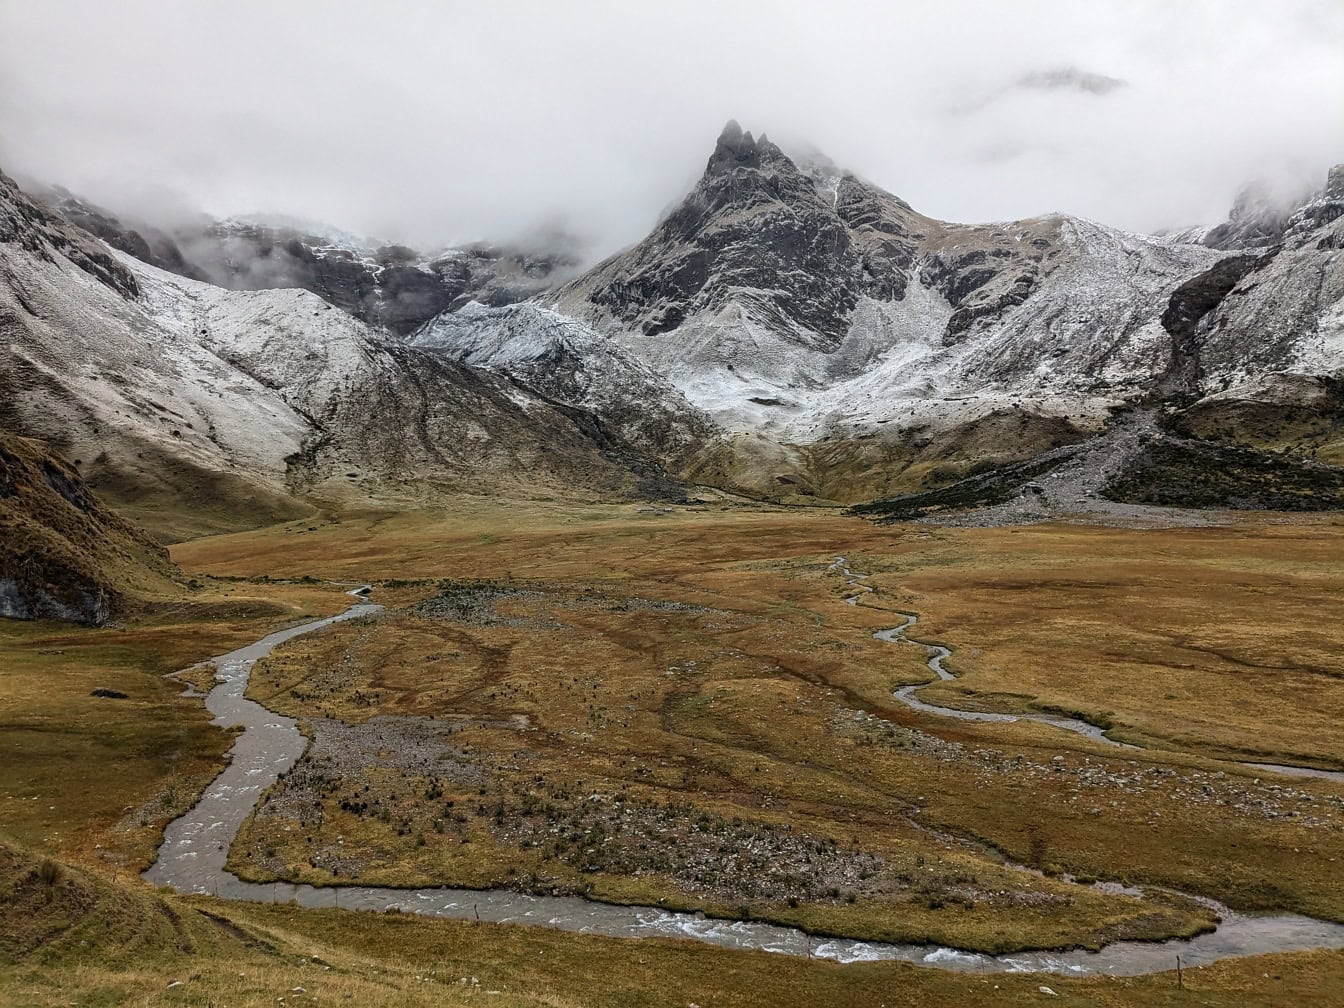 Rivière traversant une vallée avec des montagnes enneigées dans la chaîne de montagnes de la Cordillère Huayhuash au Pérou